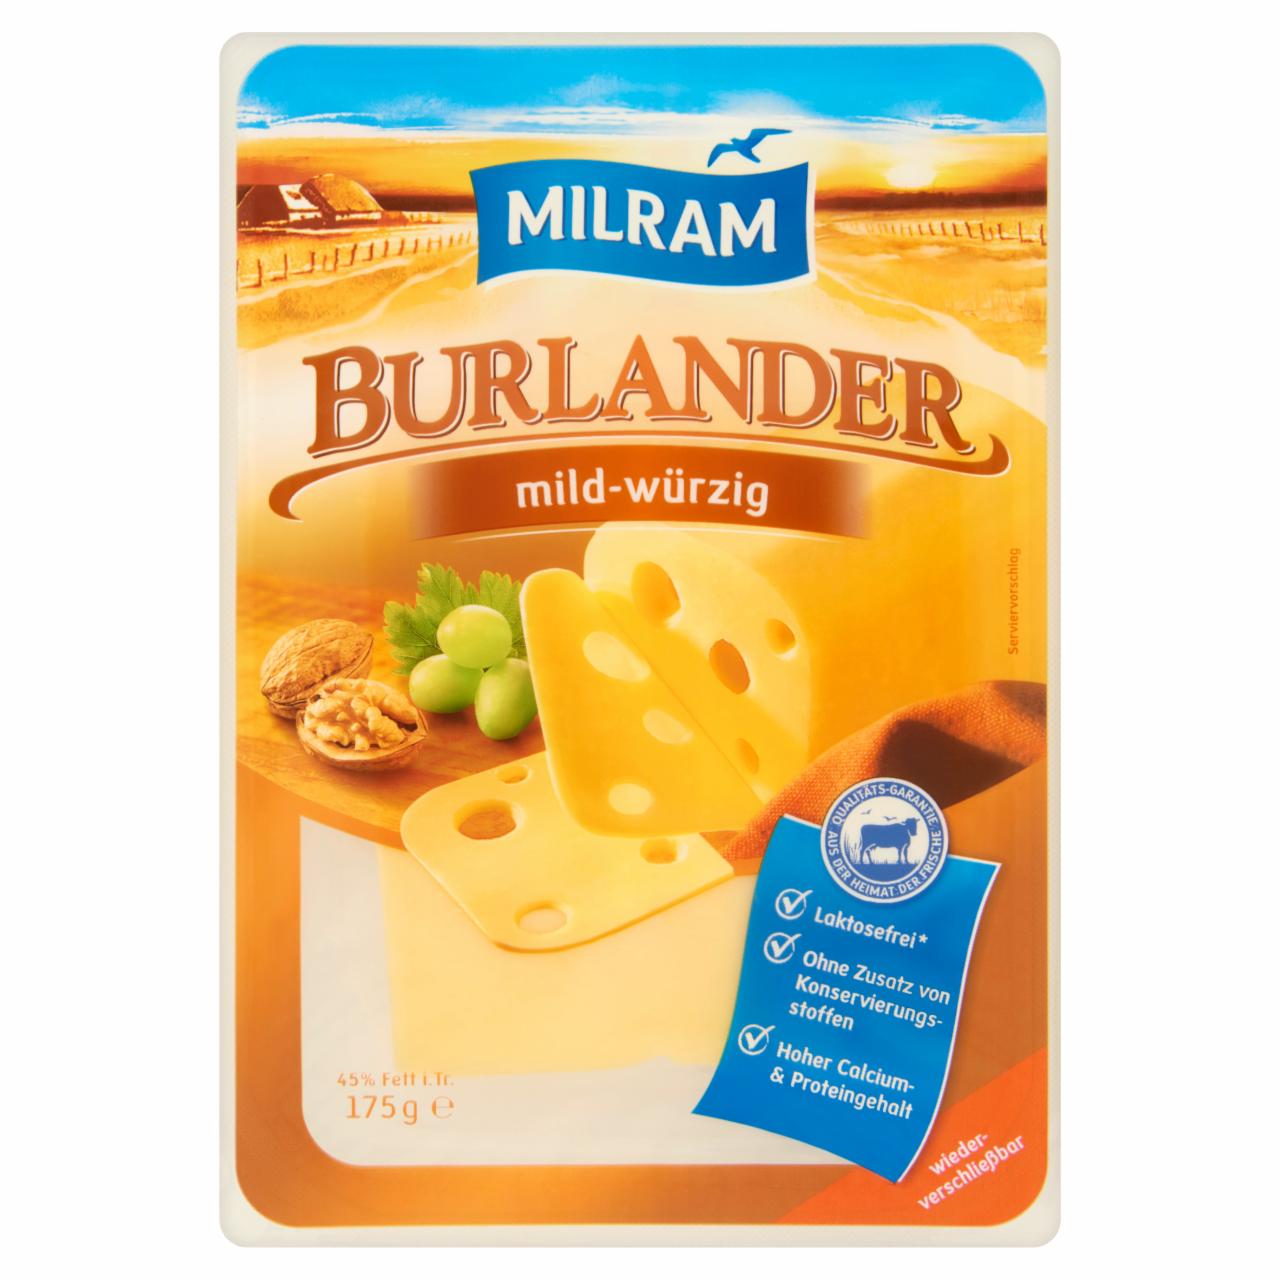 Képek - Milram Burlander szeletelt félkemény, zsíros sajt 175 g